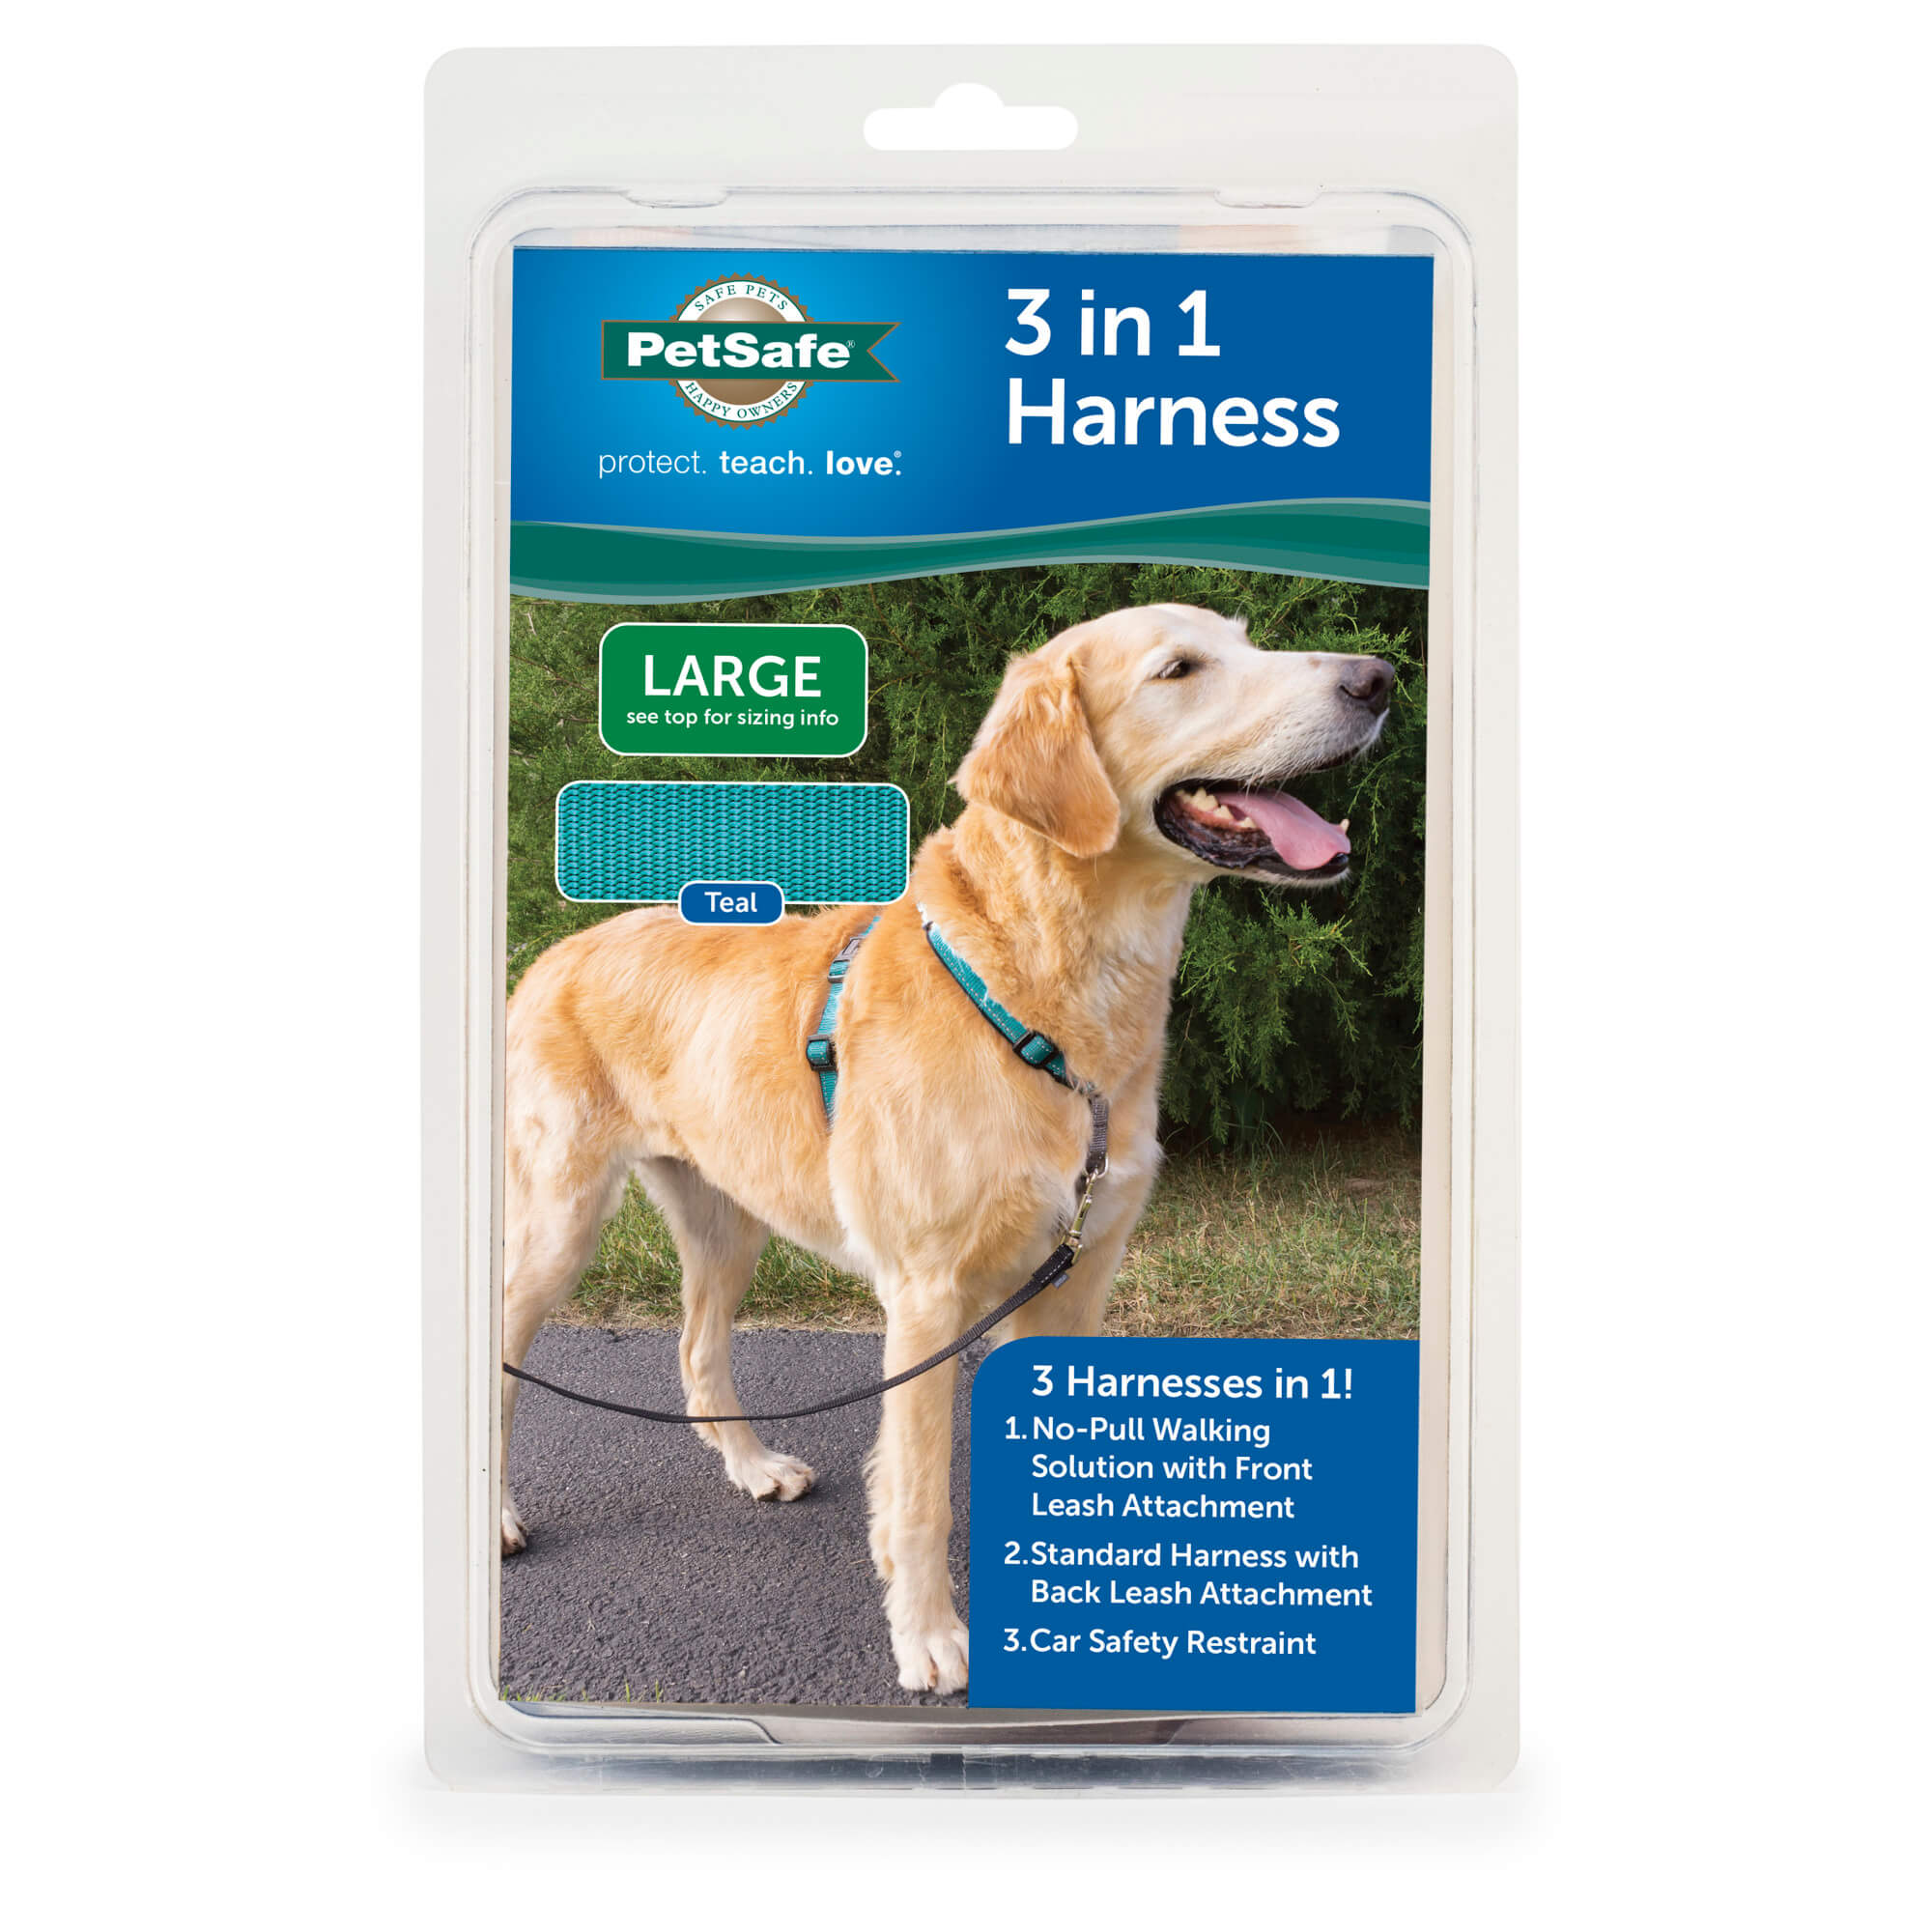 PetSafe 3 in 1 teal dog harness large